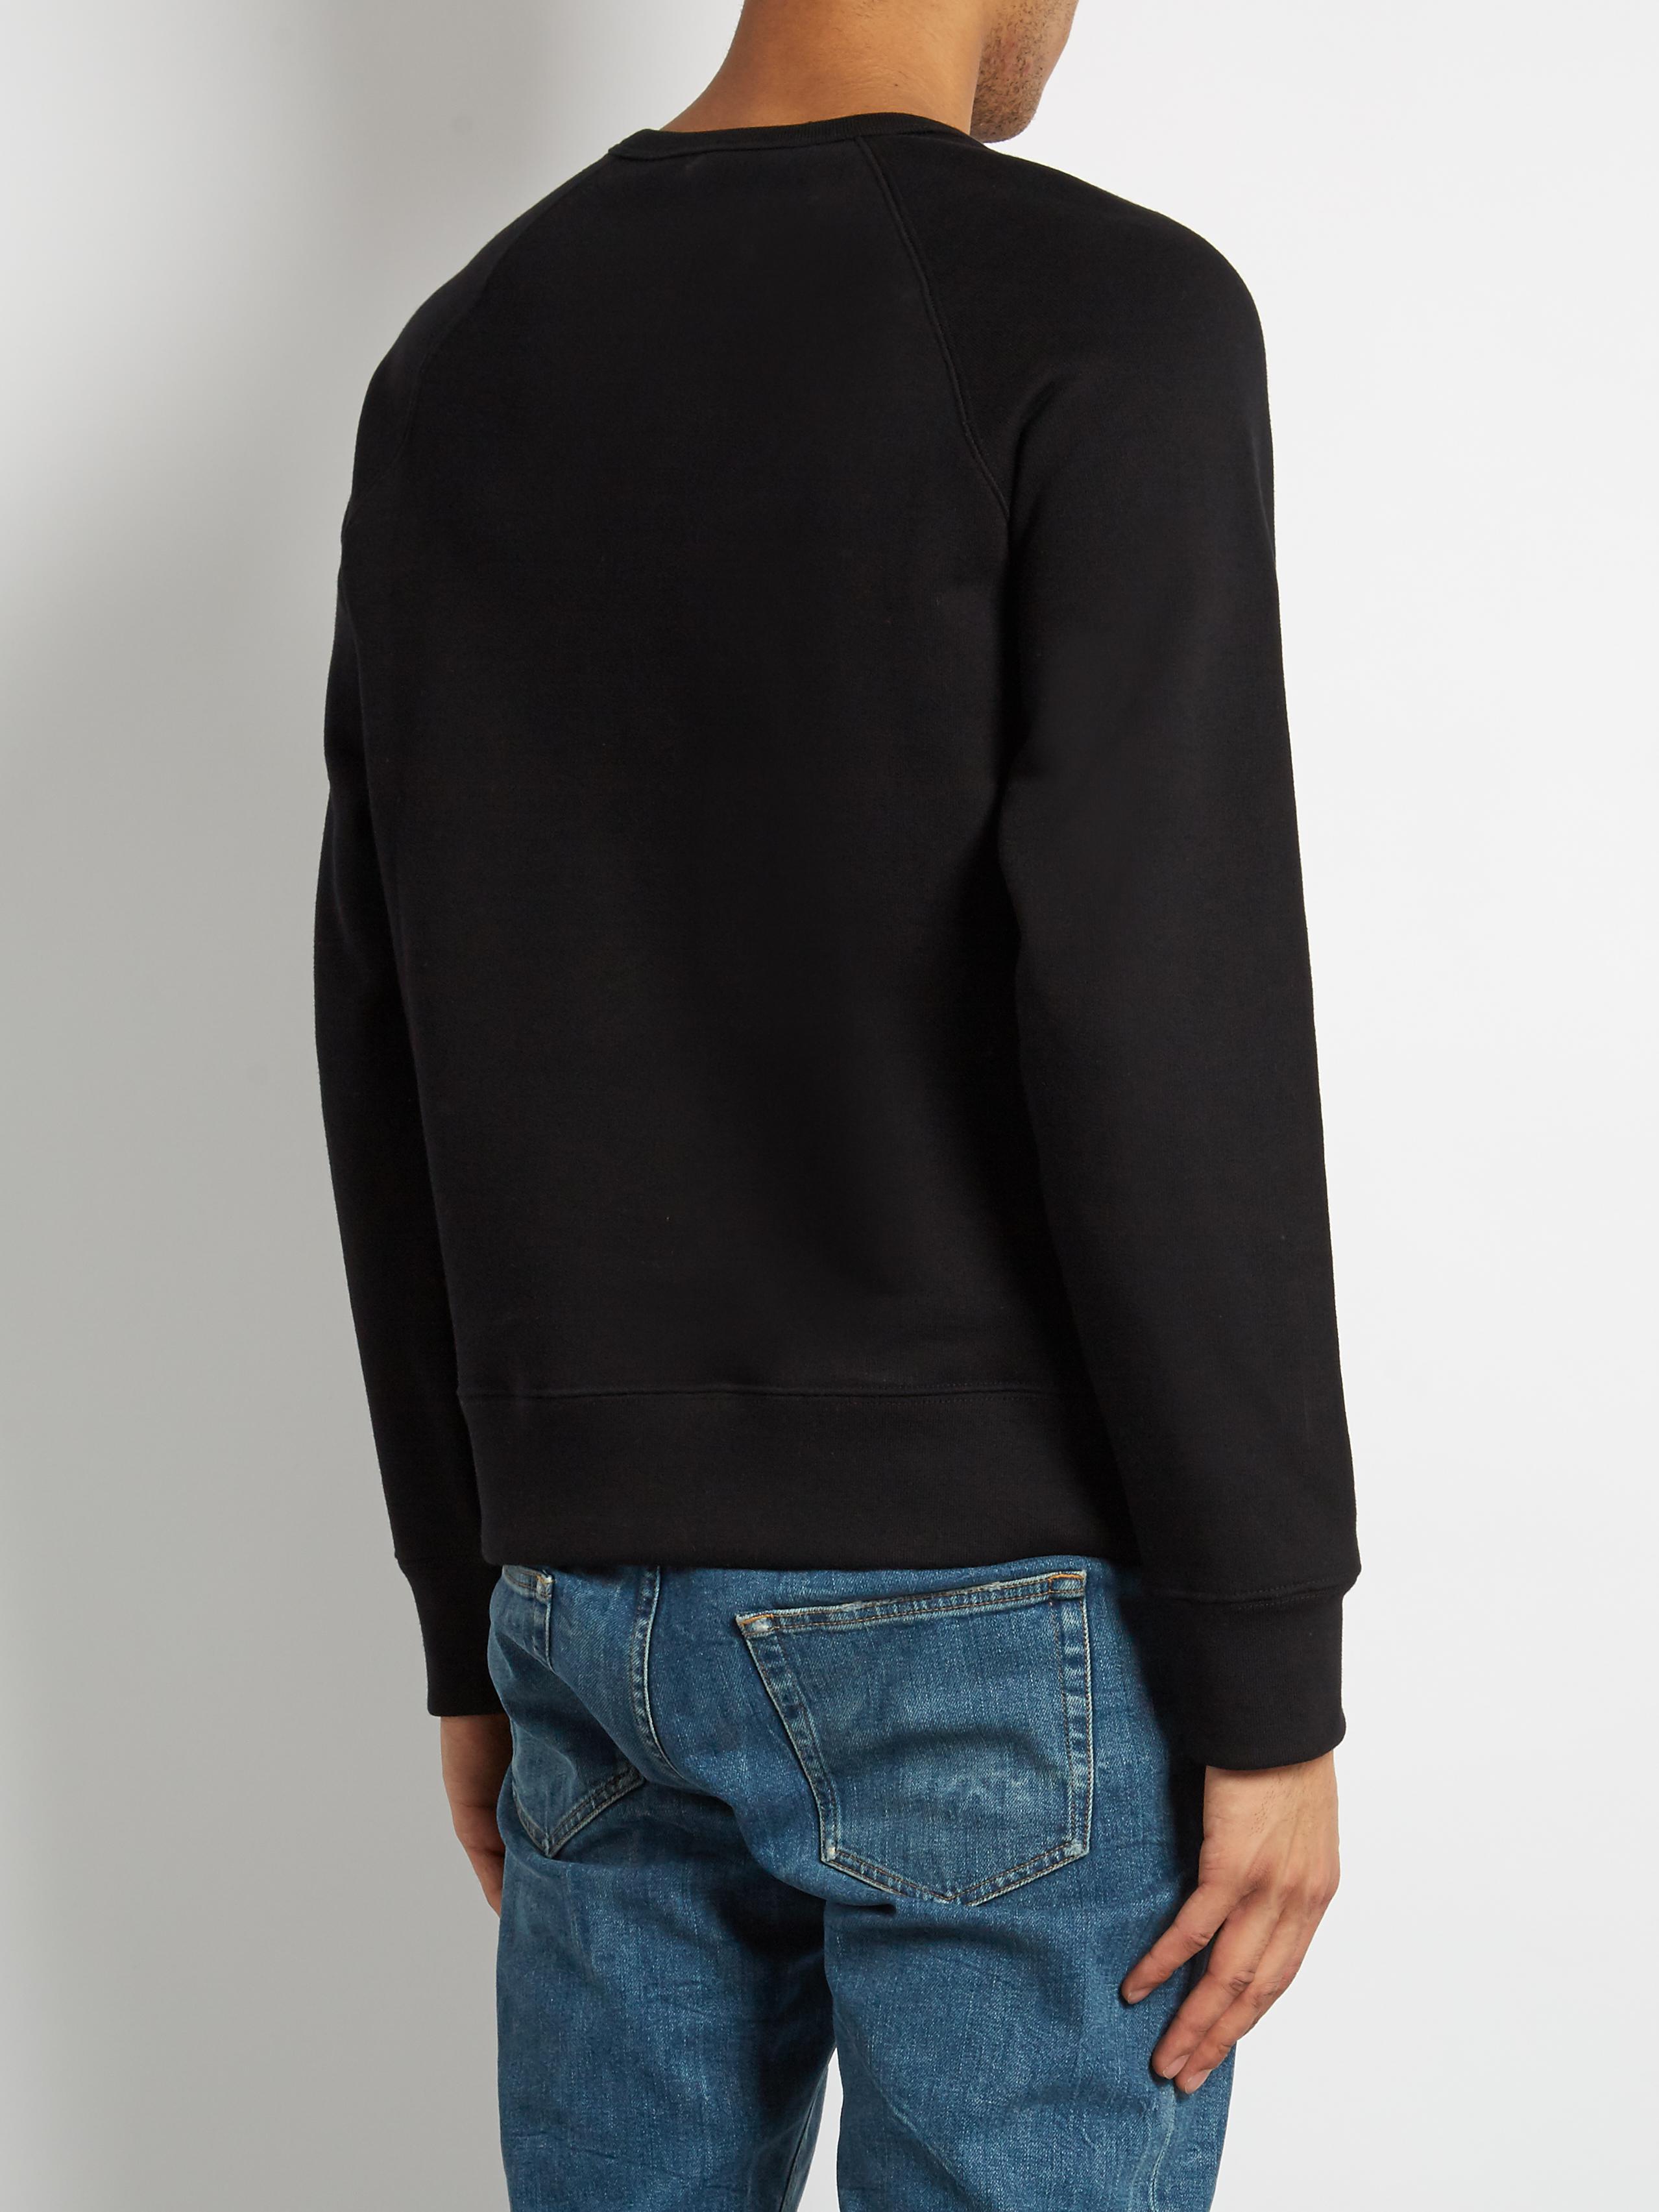 Gucci Union Jack Cat-appliqué Cotton Sweatshirt in Black for Men - Lyst